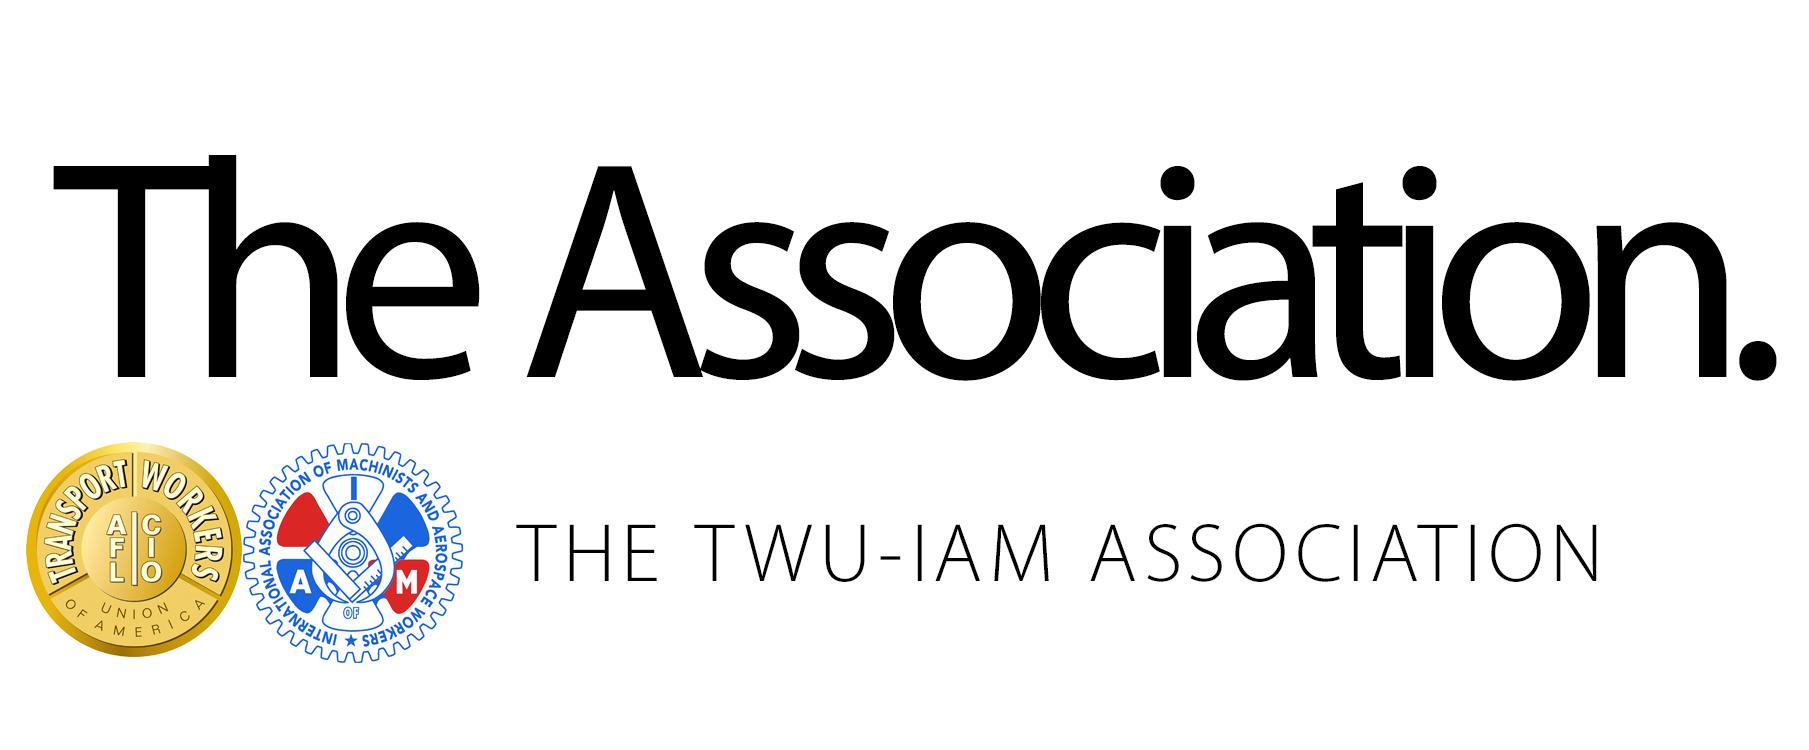 IAM Union Logo - TWU-IAM Association